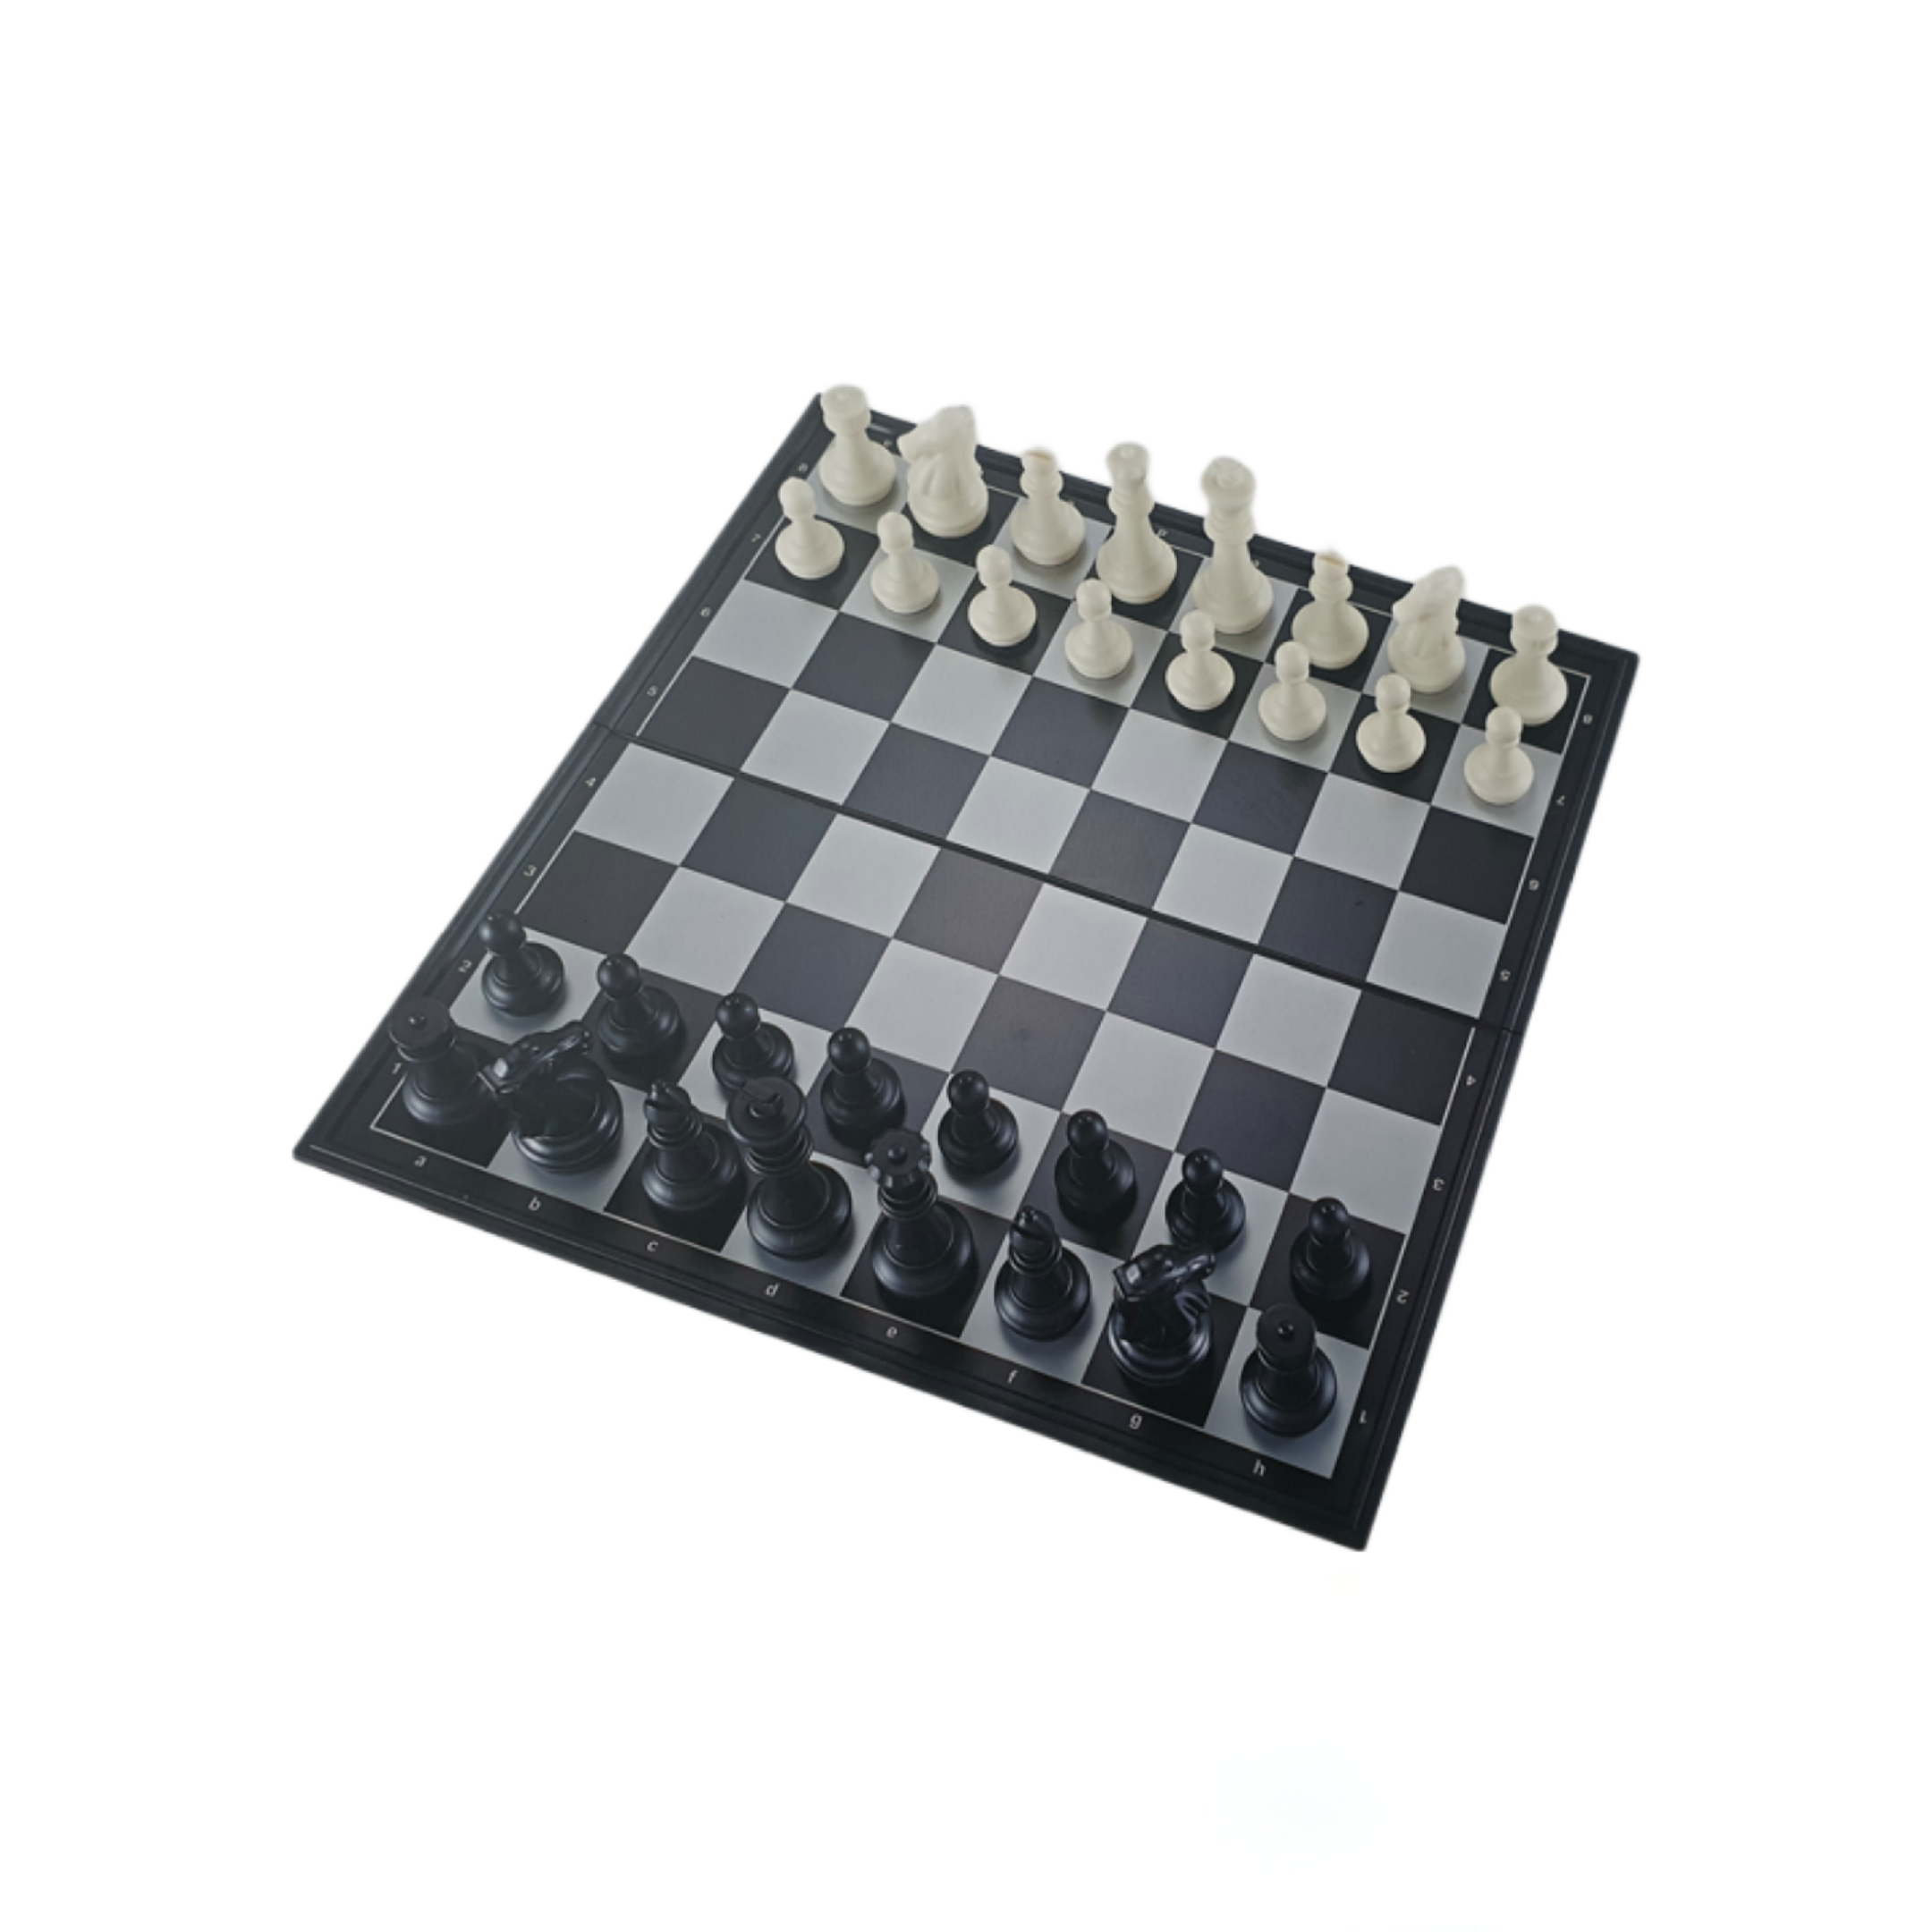 Tablero de Ajedrez Plástico Magnético con Piezas Blancas y Negras 34x34 cm. Nro. 3 - 3601